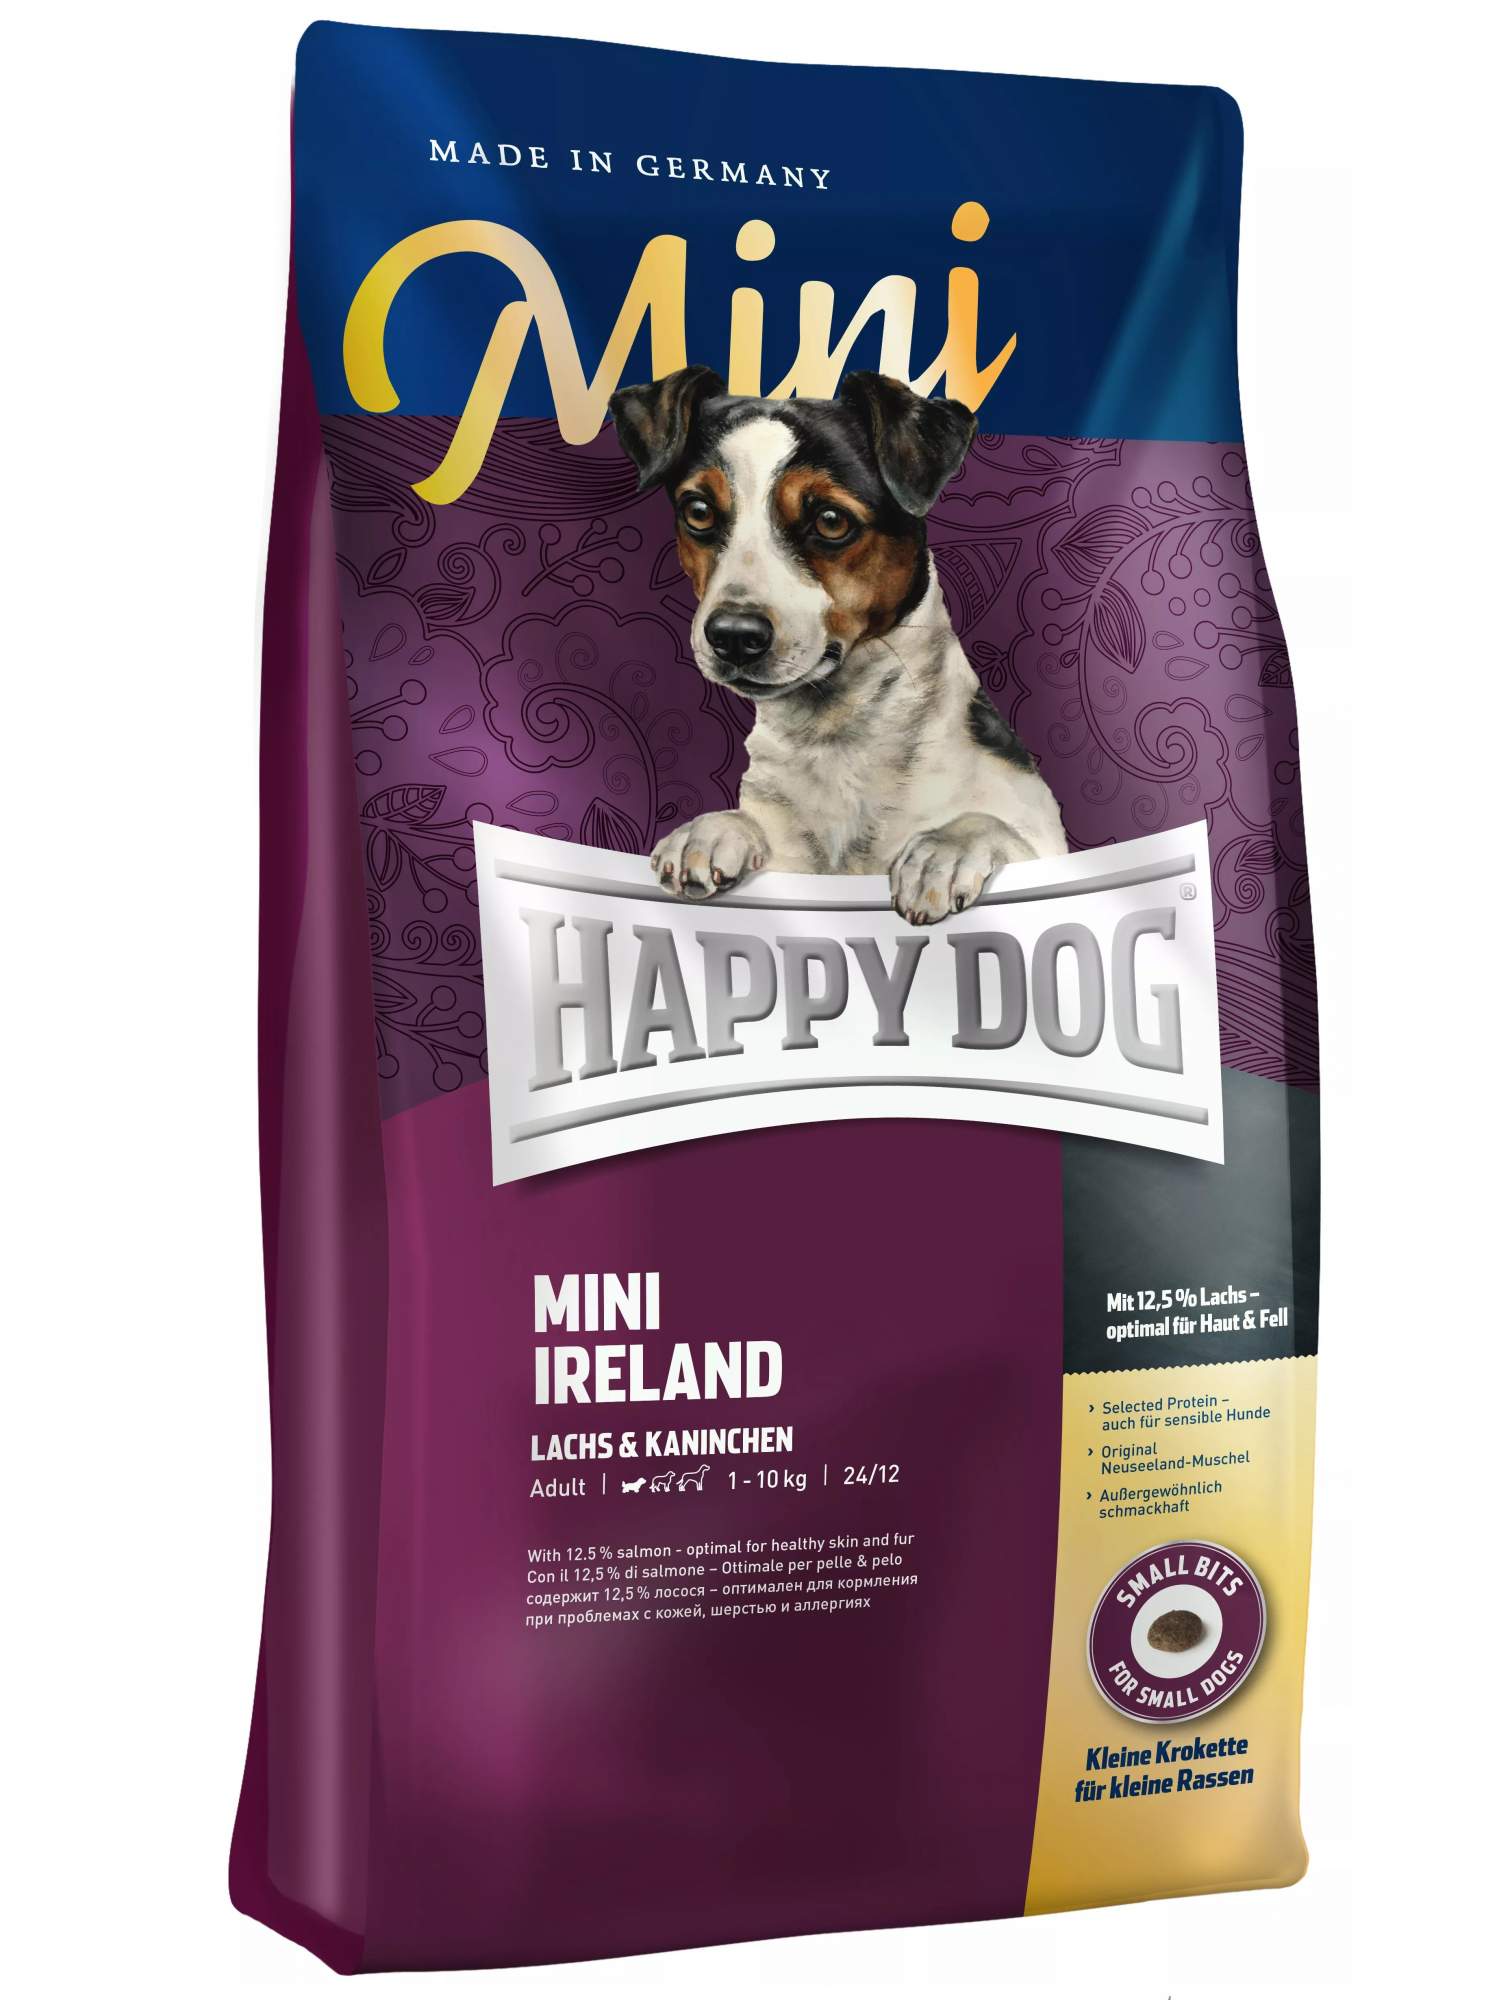 Сухой корм для собак Happy Dog Supreme Mini Irland, для мелких пород, кролик, лосось,0,3кг